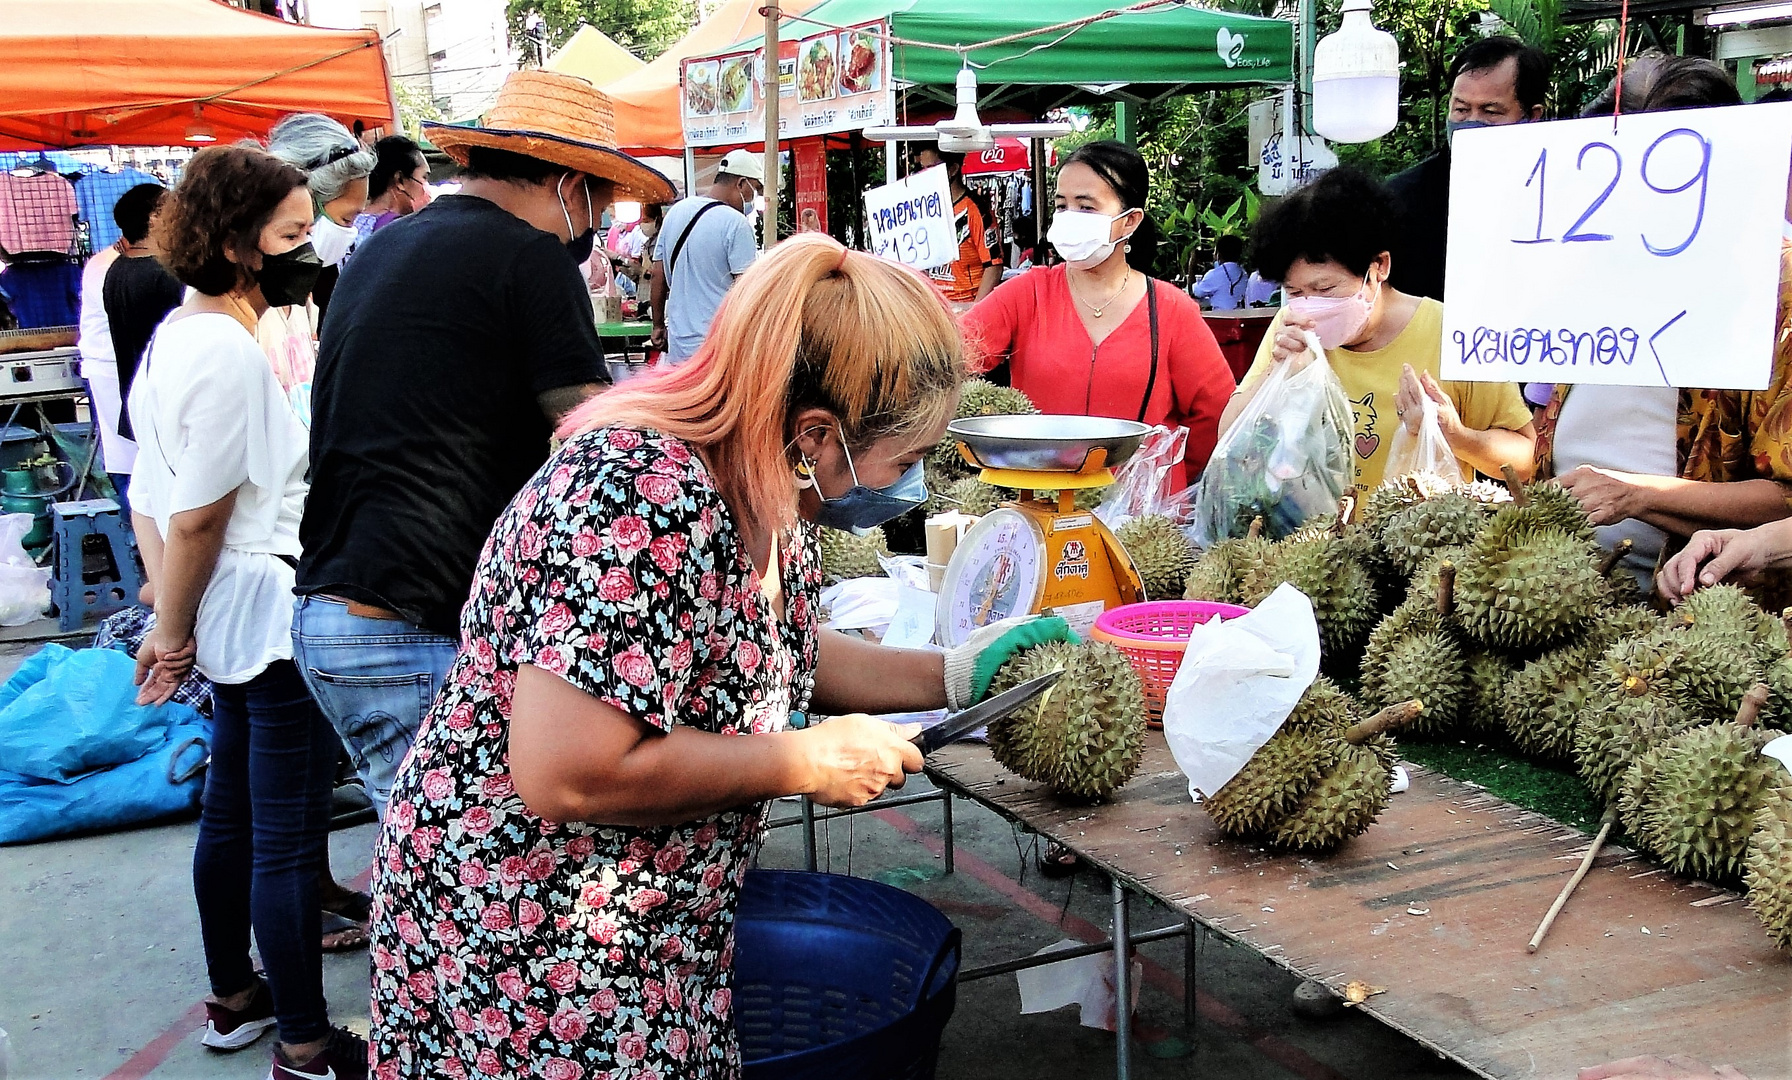 Juni ist Durianzeit II